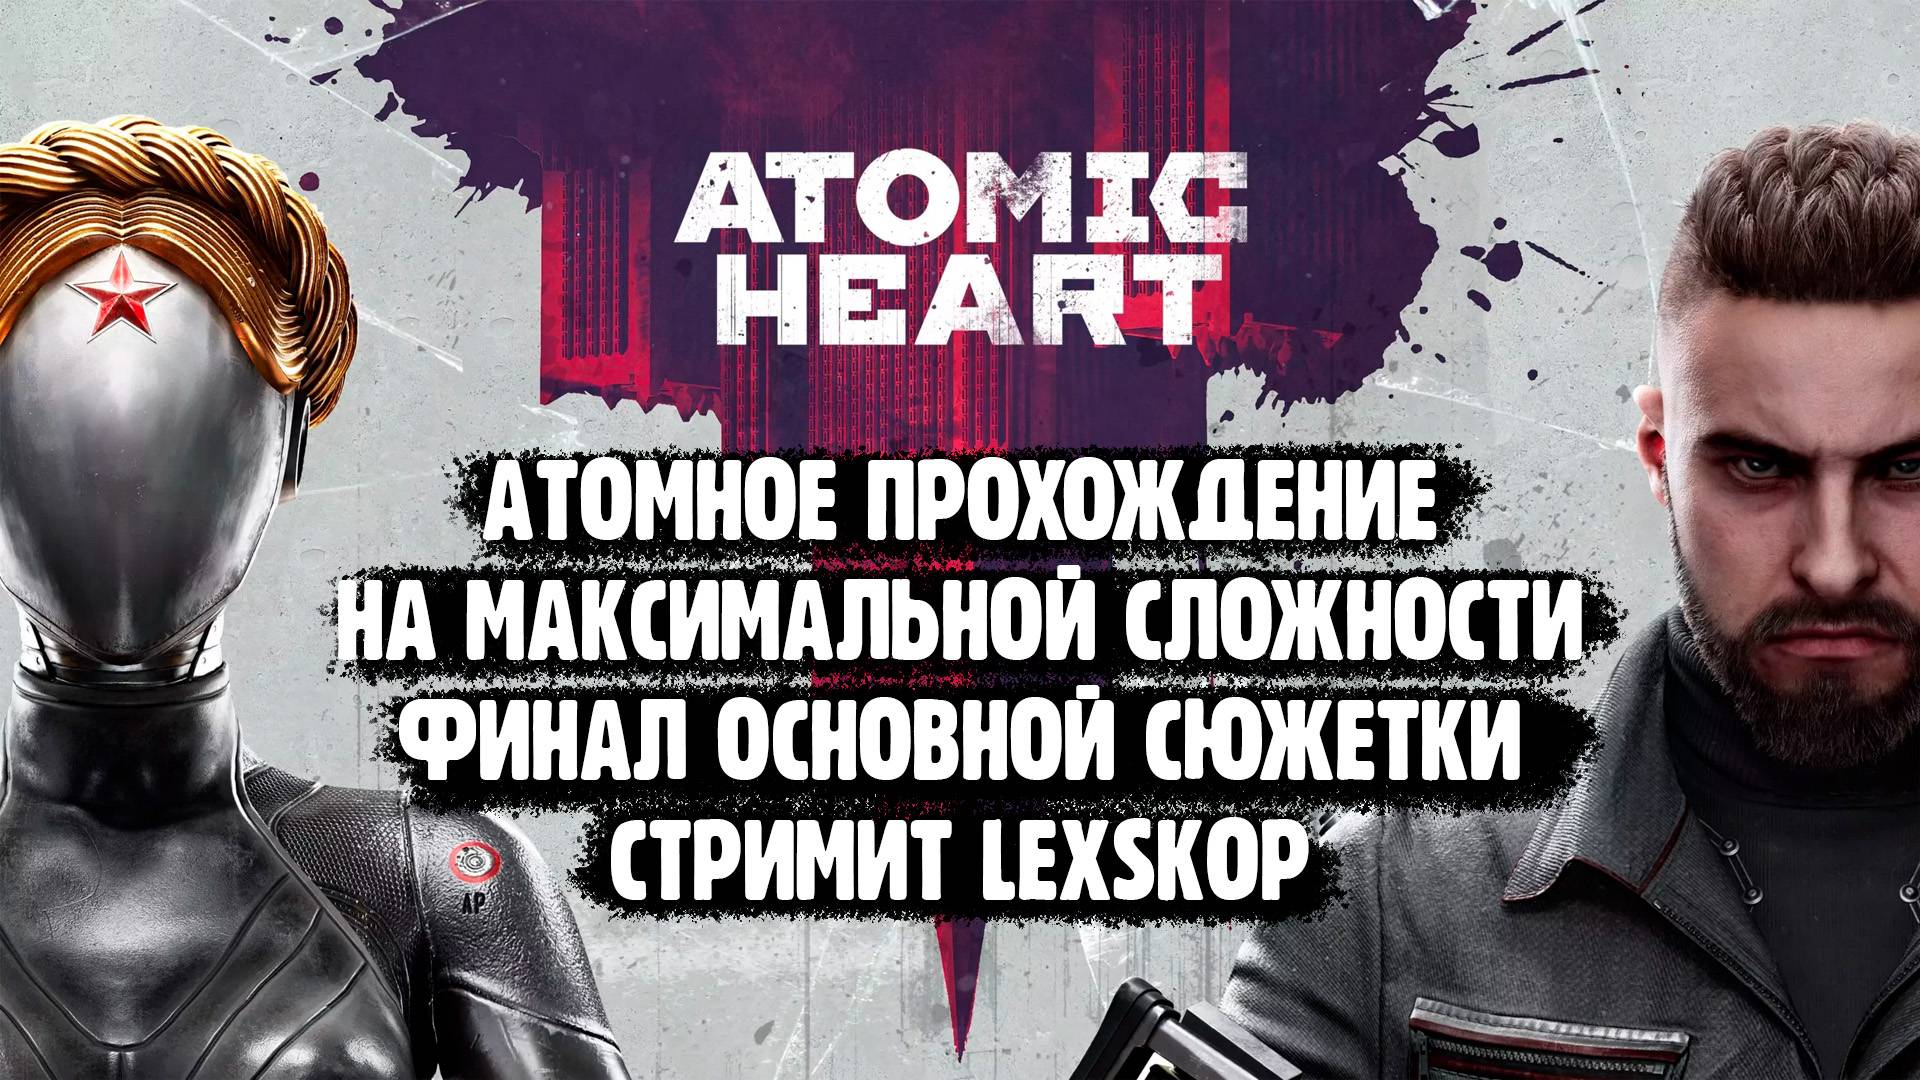 Atomic Heart | Финал сюжетки | Максимальная сложность | Атомное прохождение